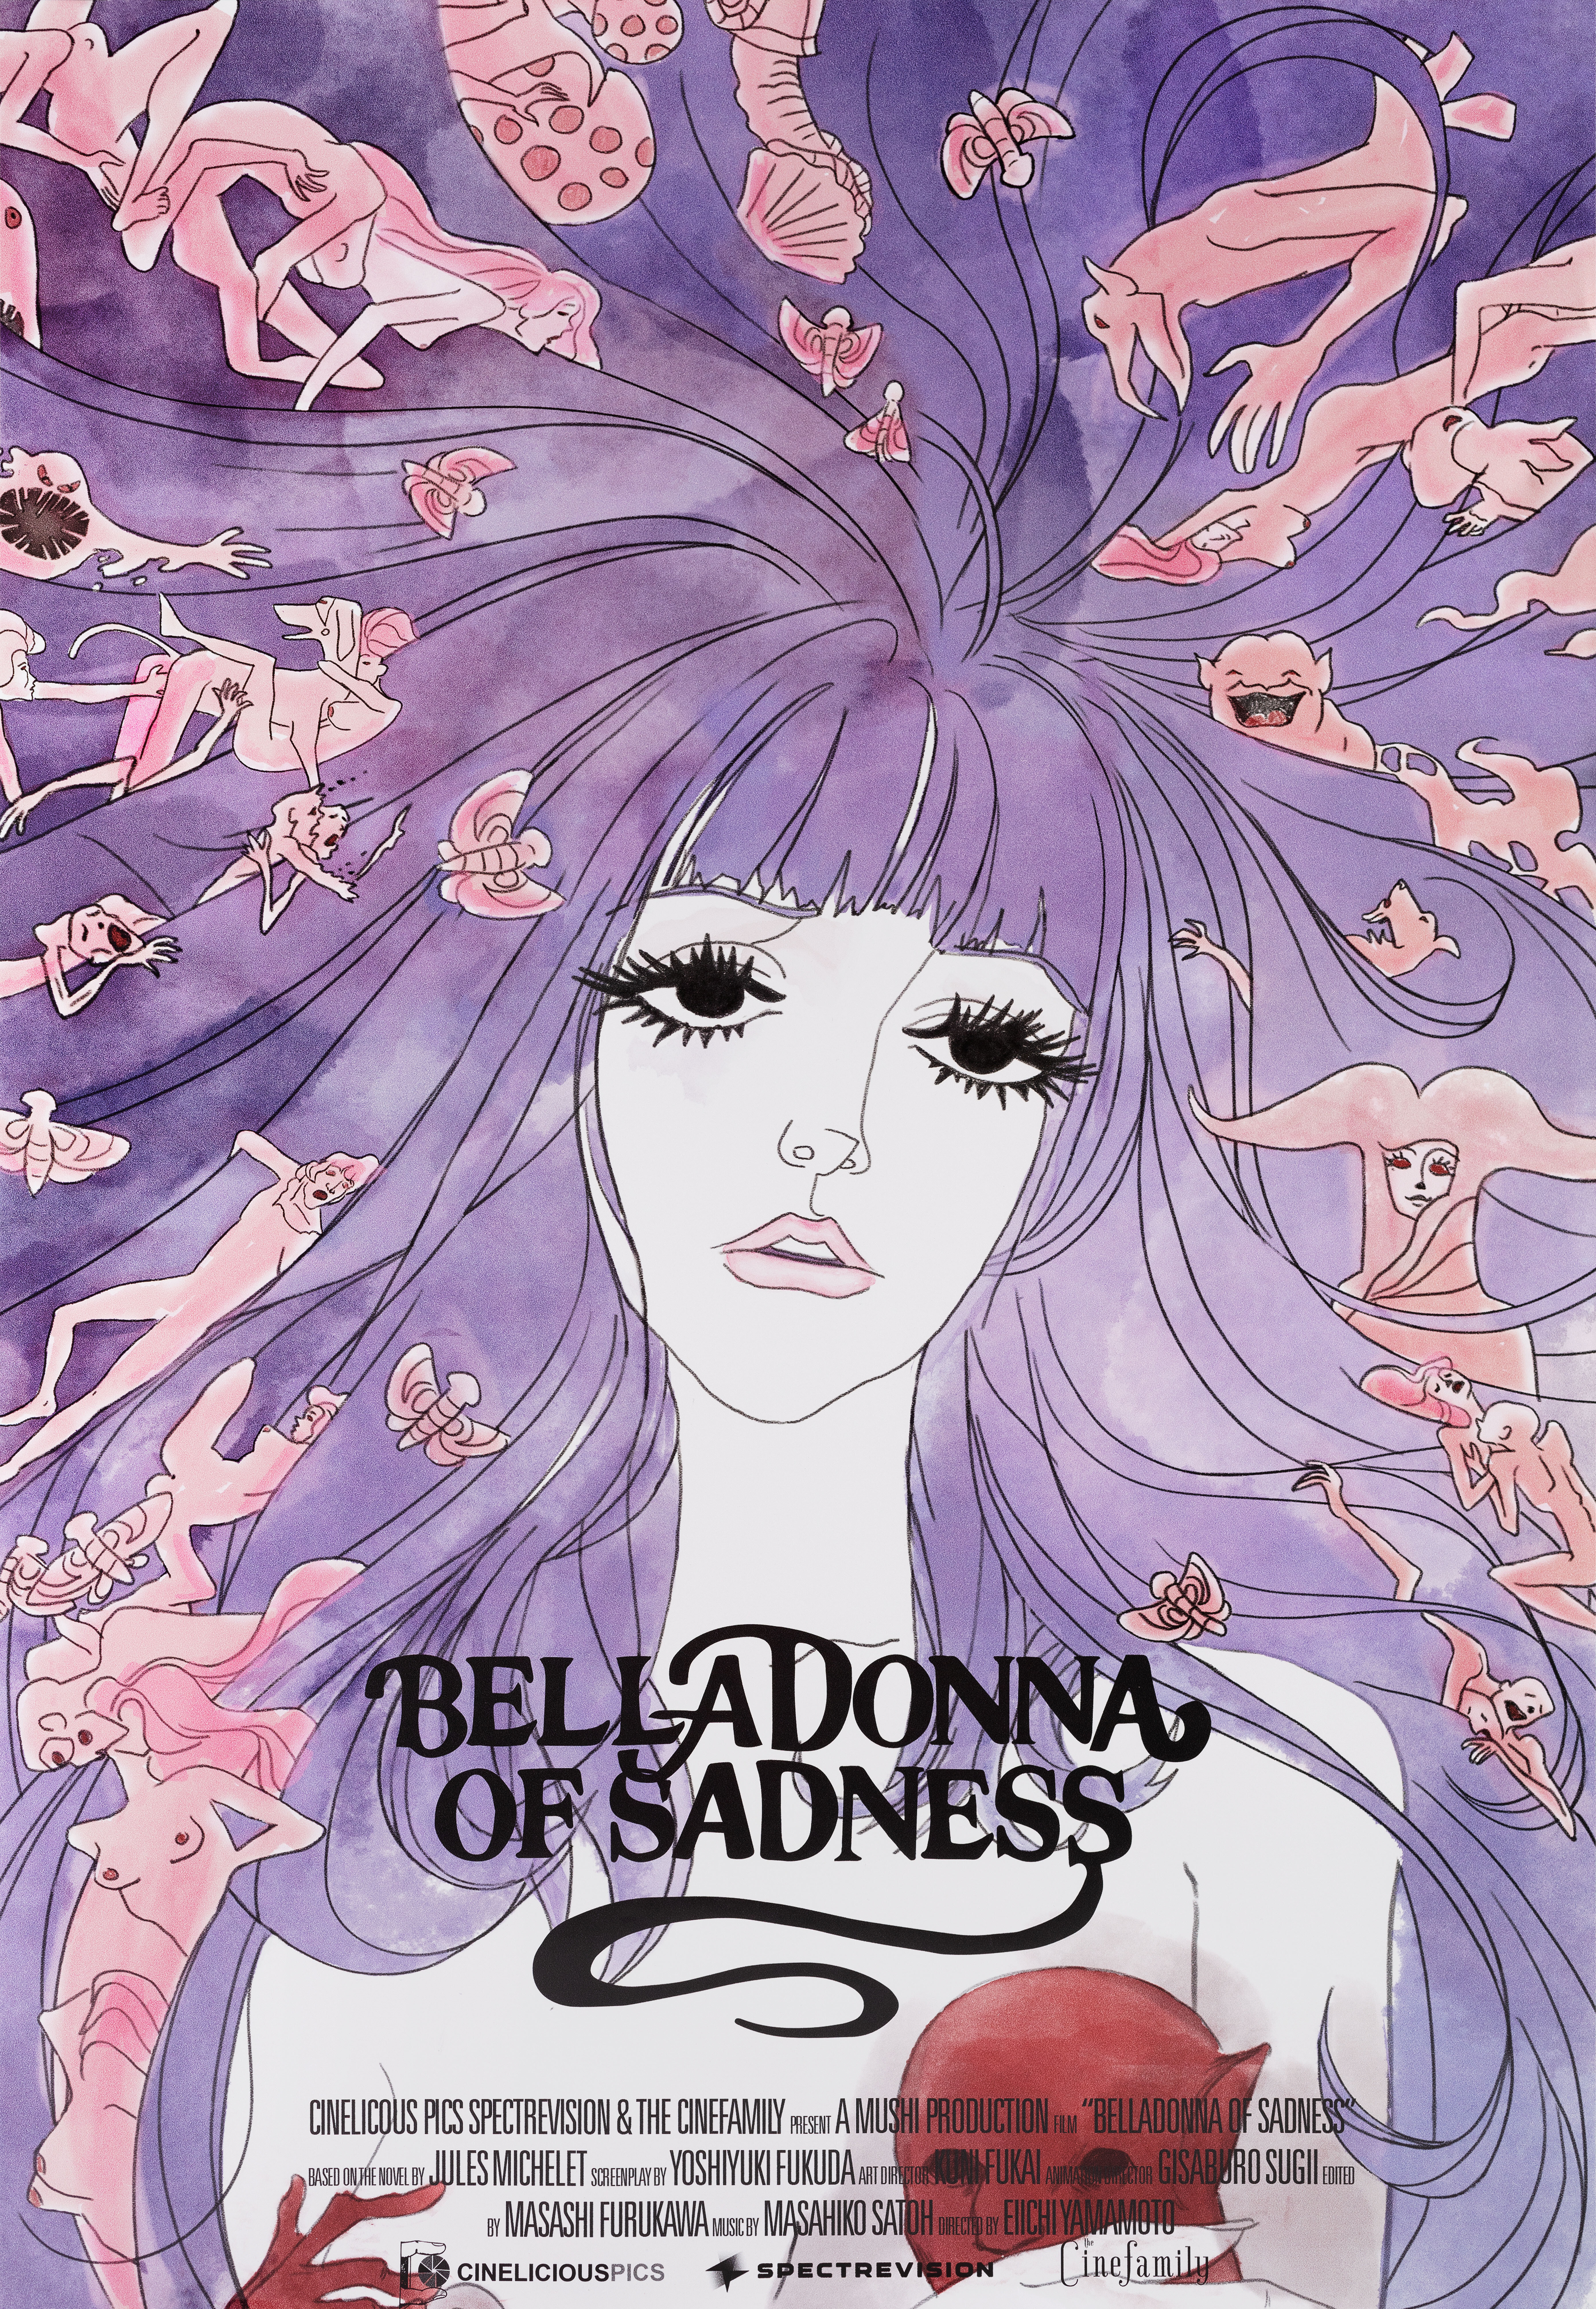 Печальная Белладонна (Belladonna of Sadness, 1973), режиссёр Эйити Ямамото, американский постер к фильму (психоделическое искусство, 2016 год)